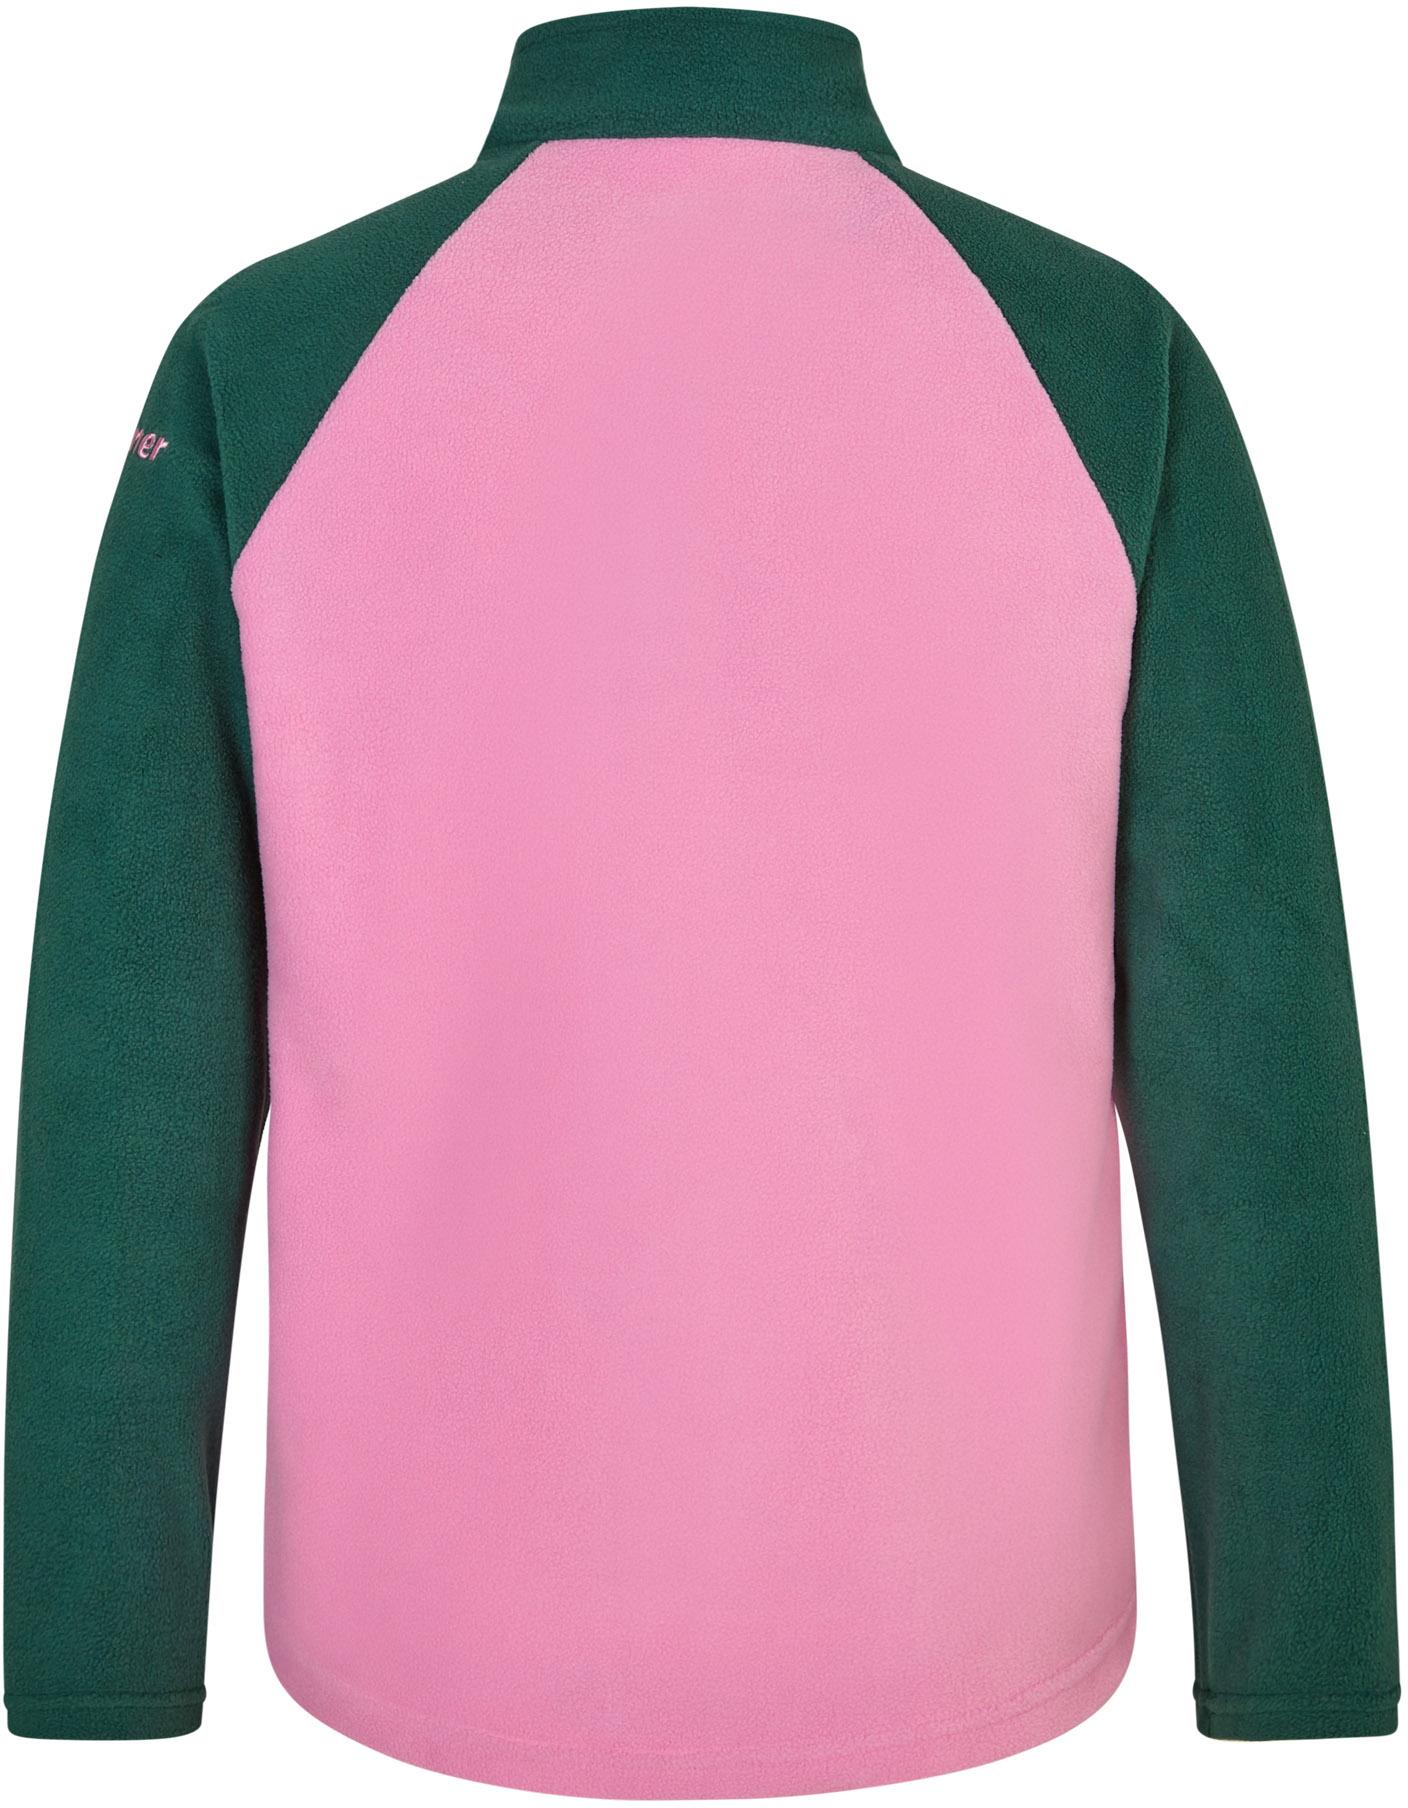 Shop in Kleidung im von rosa von Ziener Online kaufen SportScheck